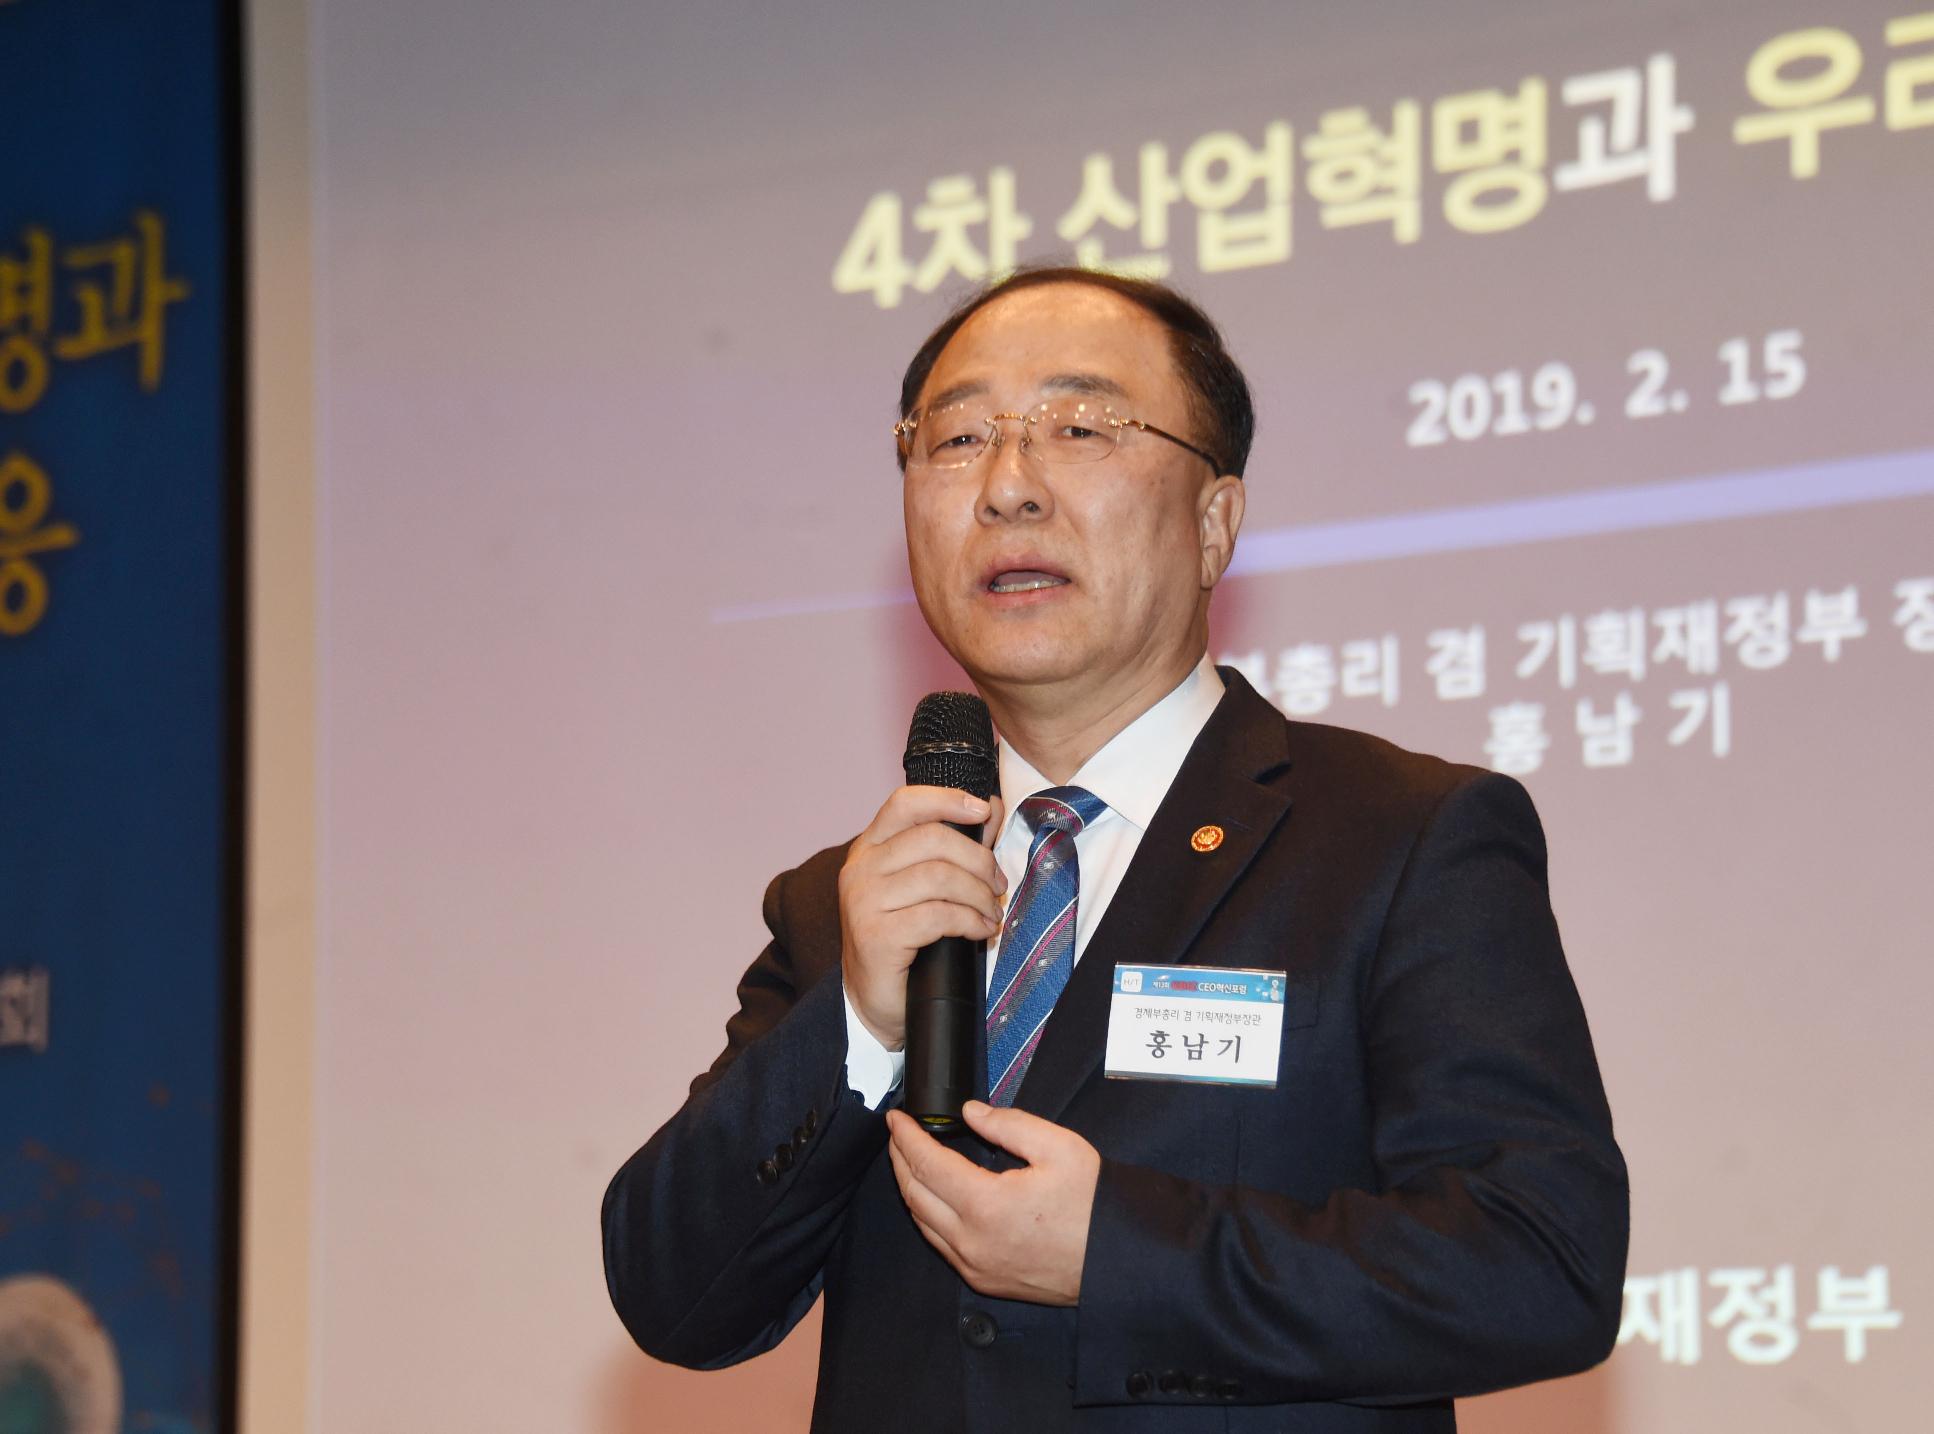 홍남기 부총리, KBIZ CEO혁신포럼 조찬강연